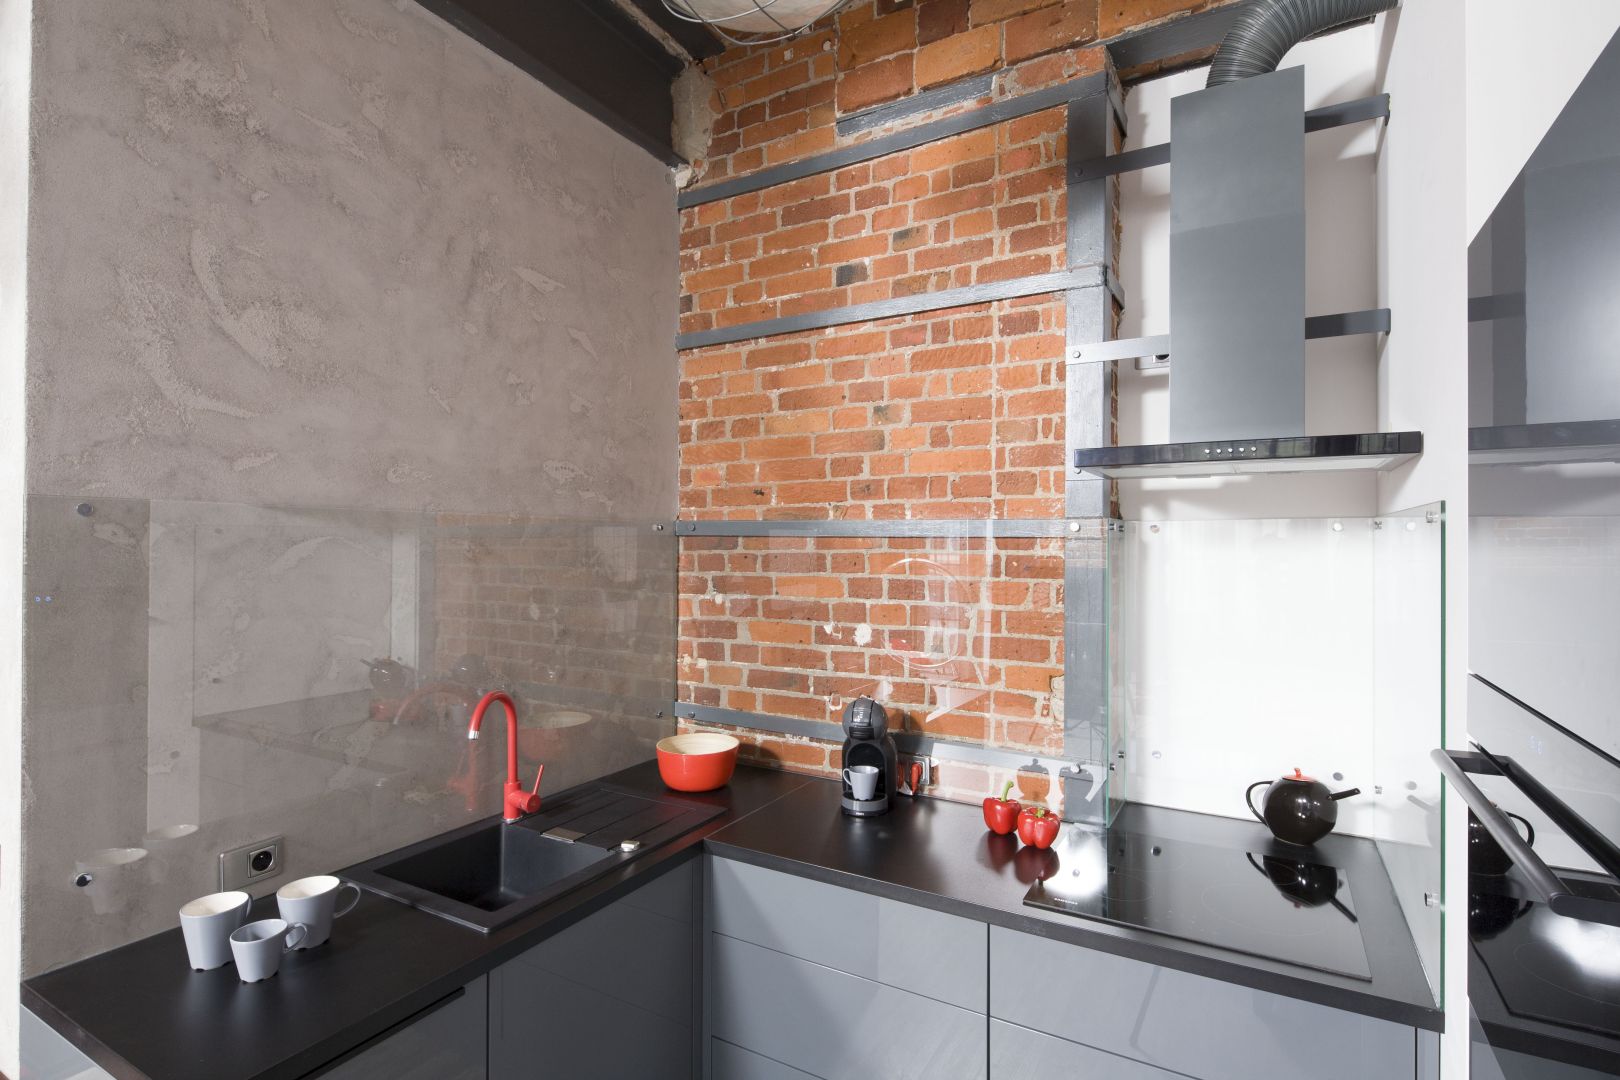 W kuchni surowy beton doskonale łączy się z ciepła cegłą. Projekt Nowa Papiernia. Fot. Bartosz Jarosz.